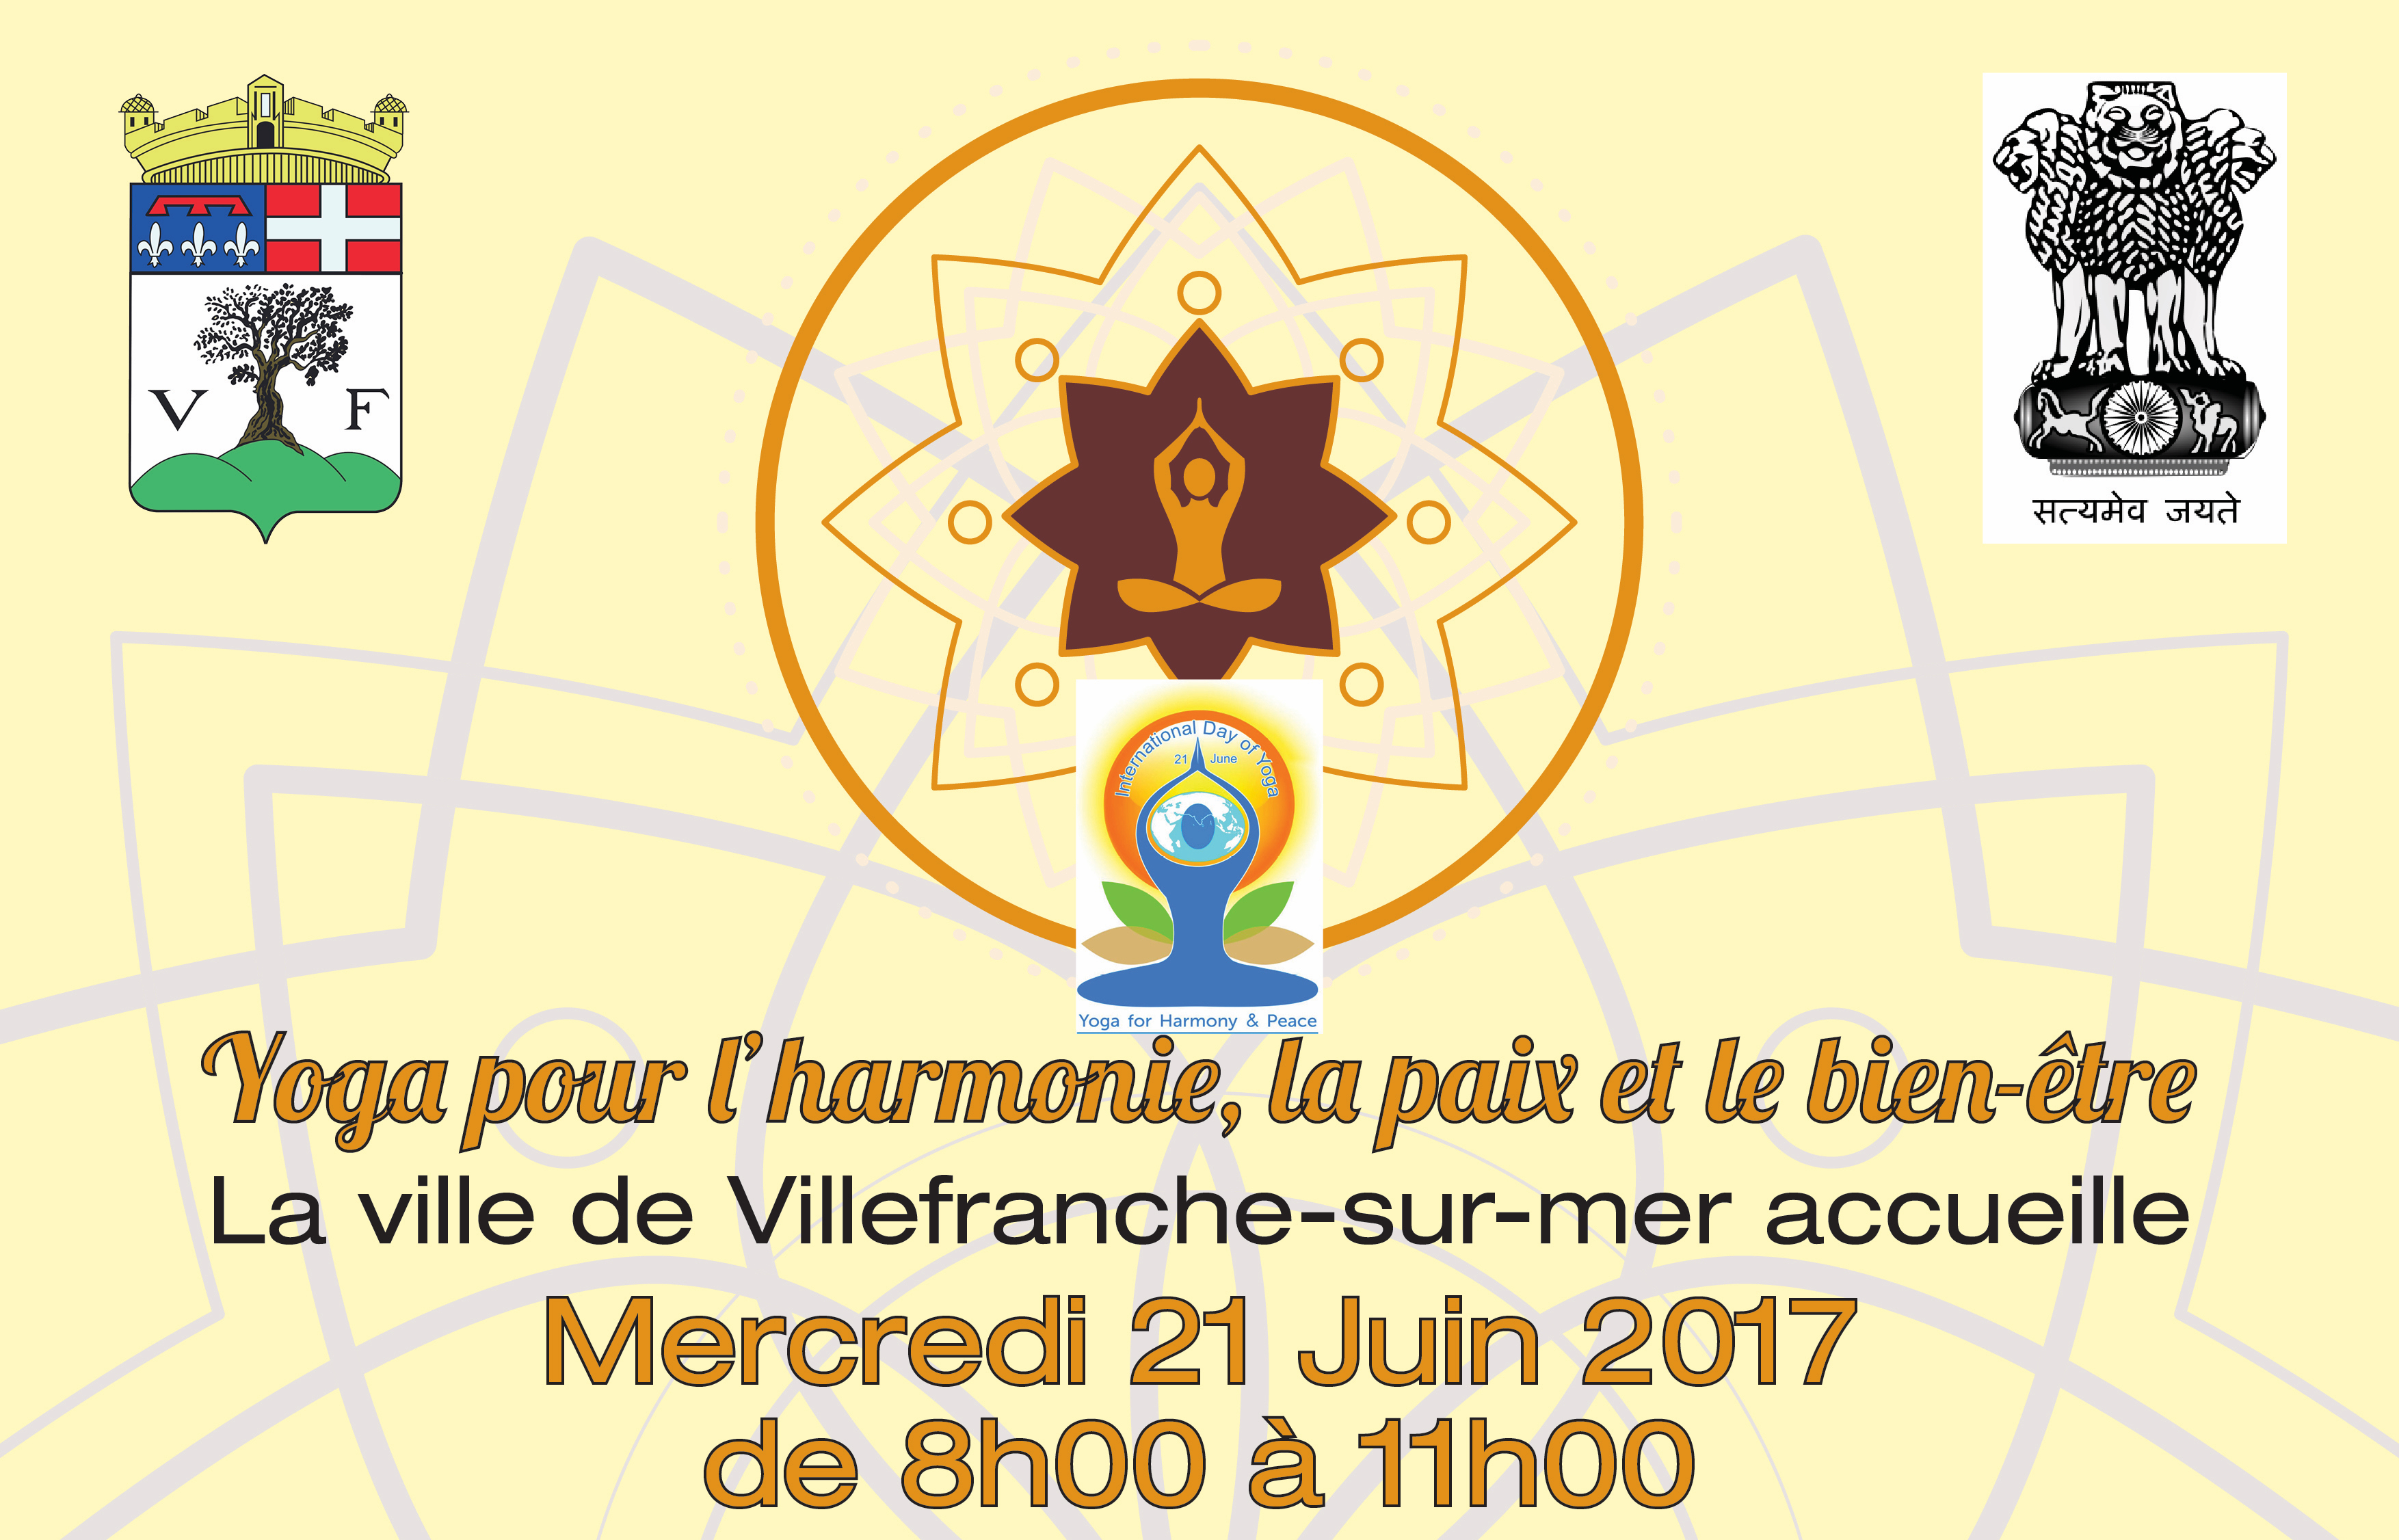 You are currently viewing Journée Internationale du Yoga à Villefranche-sur-Mer le 21 Juin